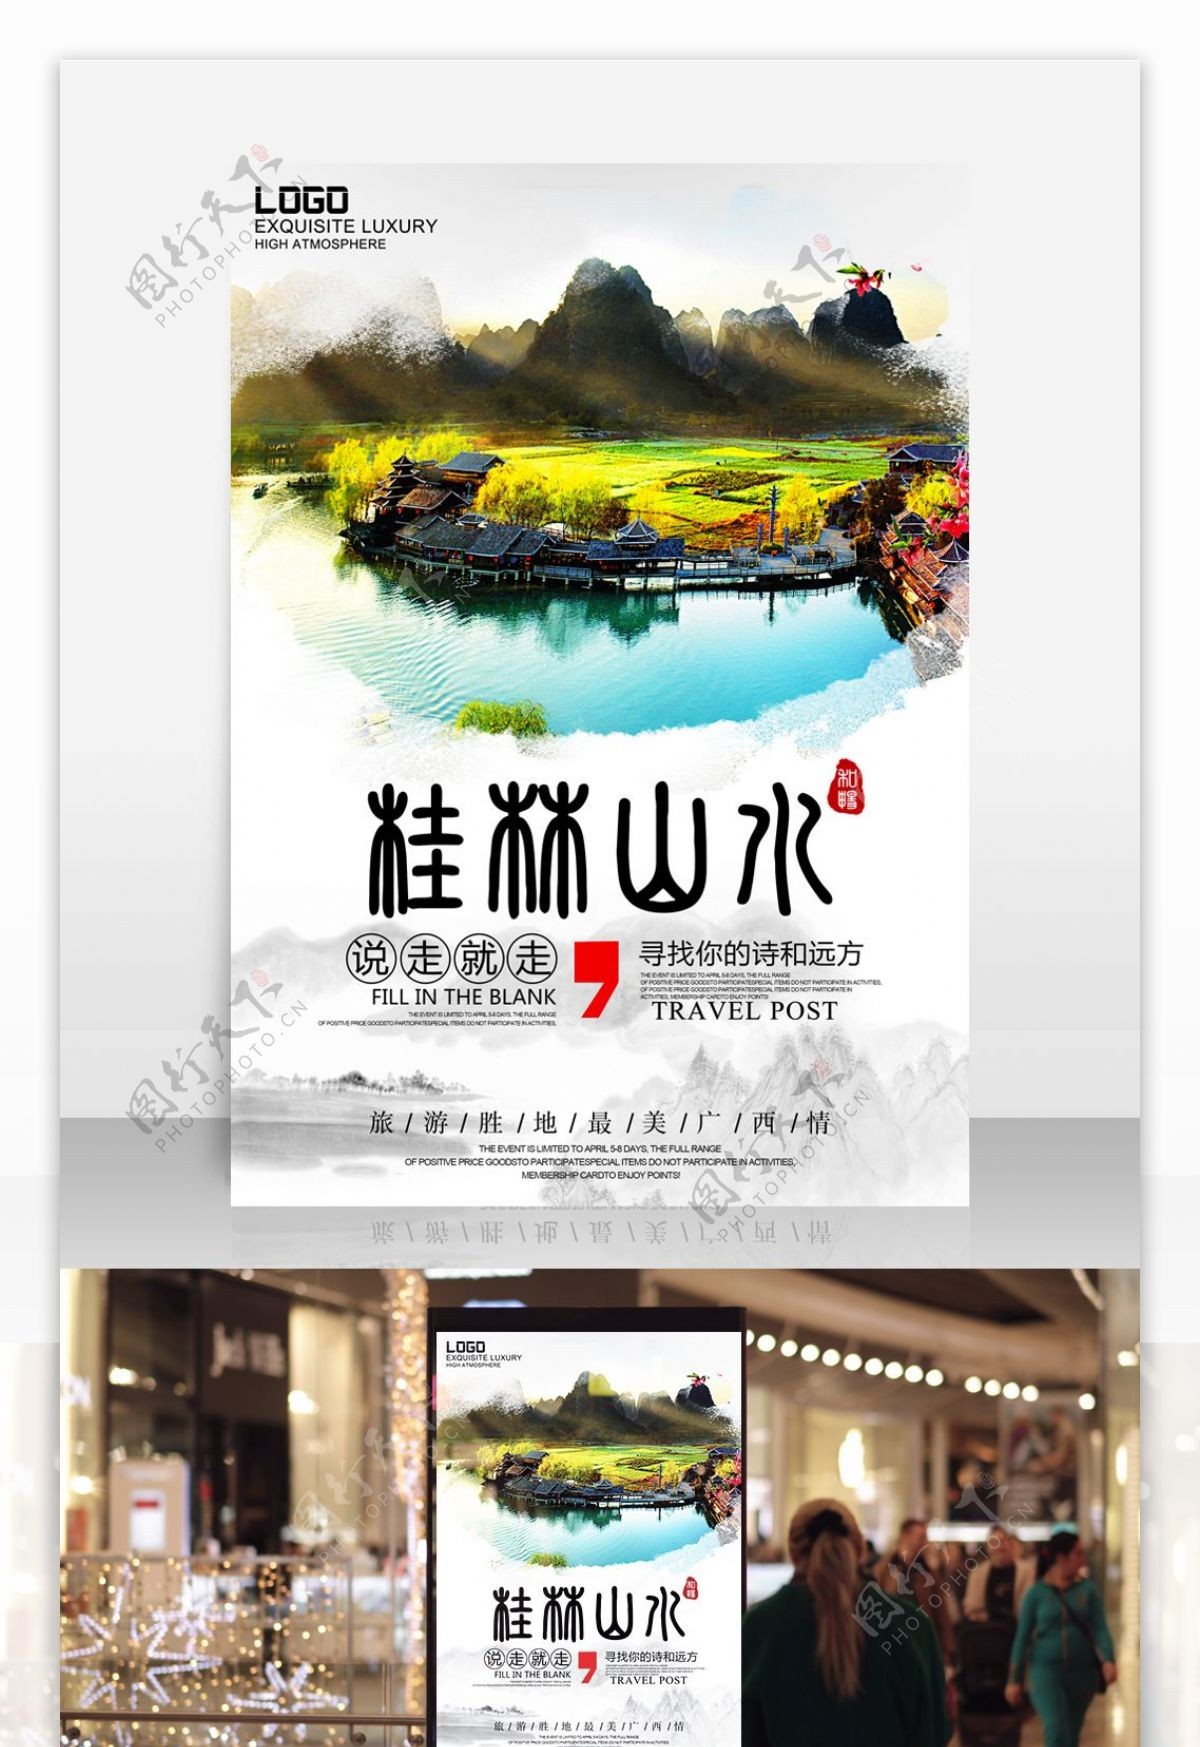 桂林上水风景旅行社路线宣传海报旅游海报设计